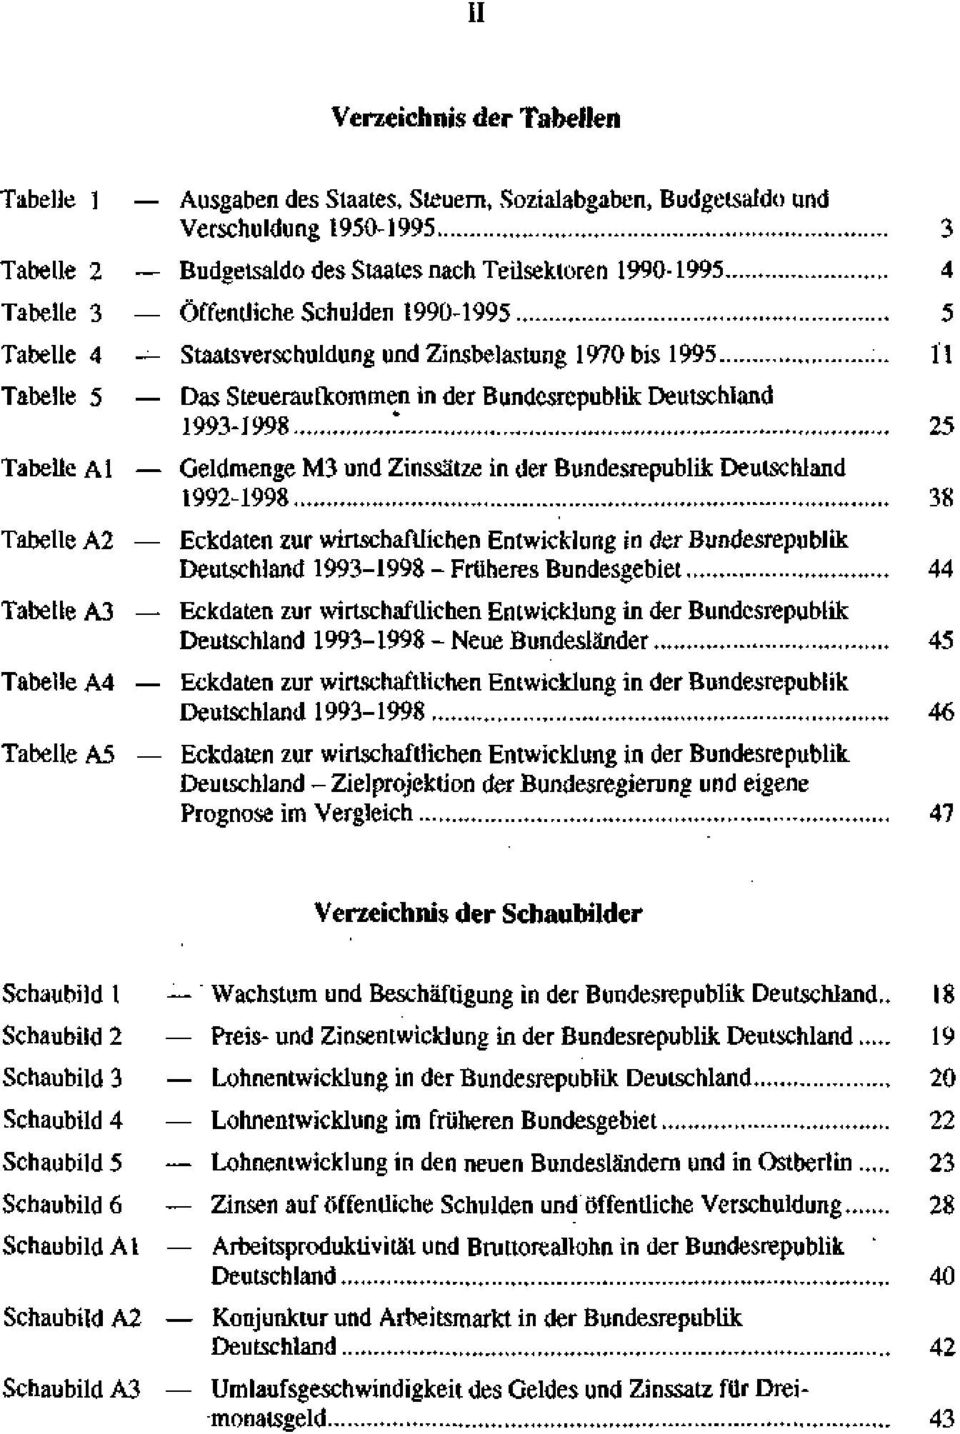 . 11 Das Steueraufkommen in der Bundesrepublik Deutschland 1993-1998.".